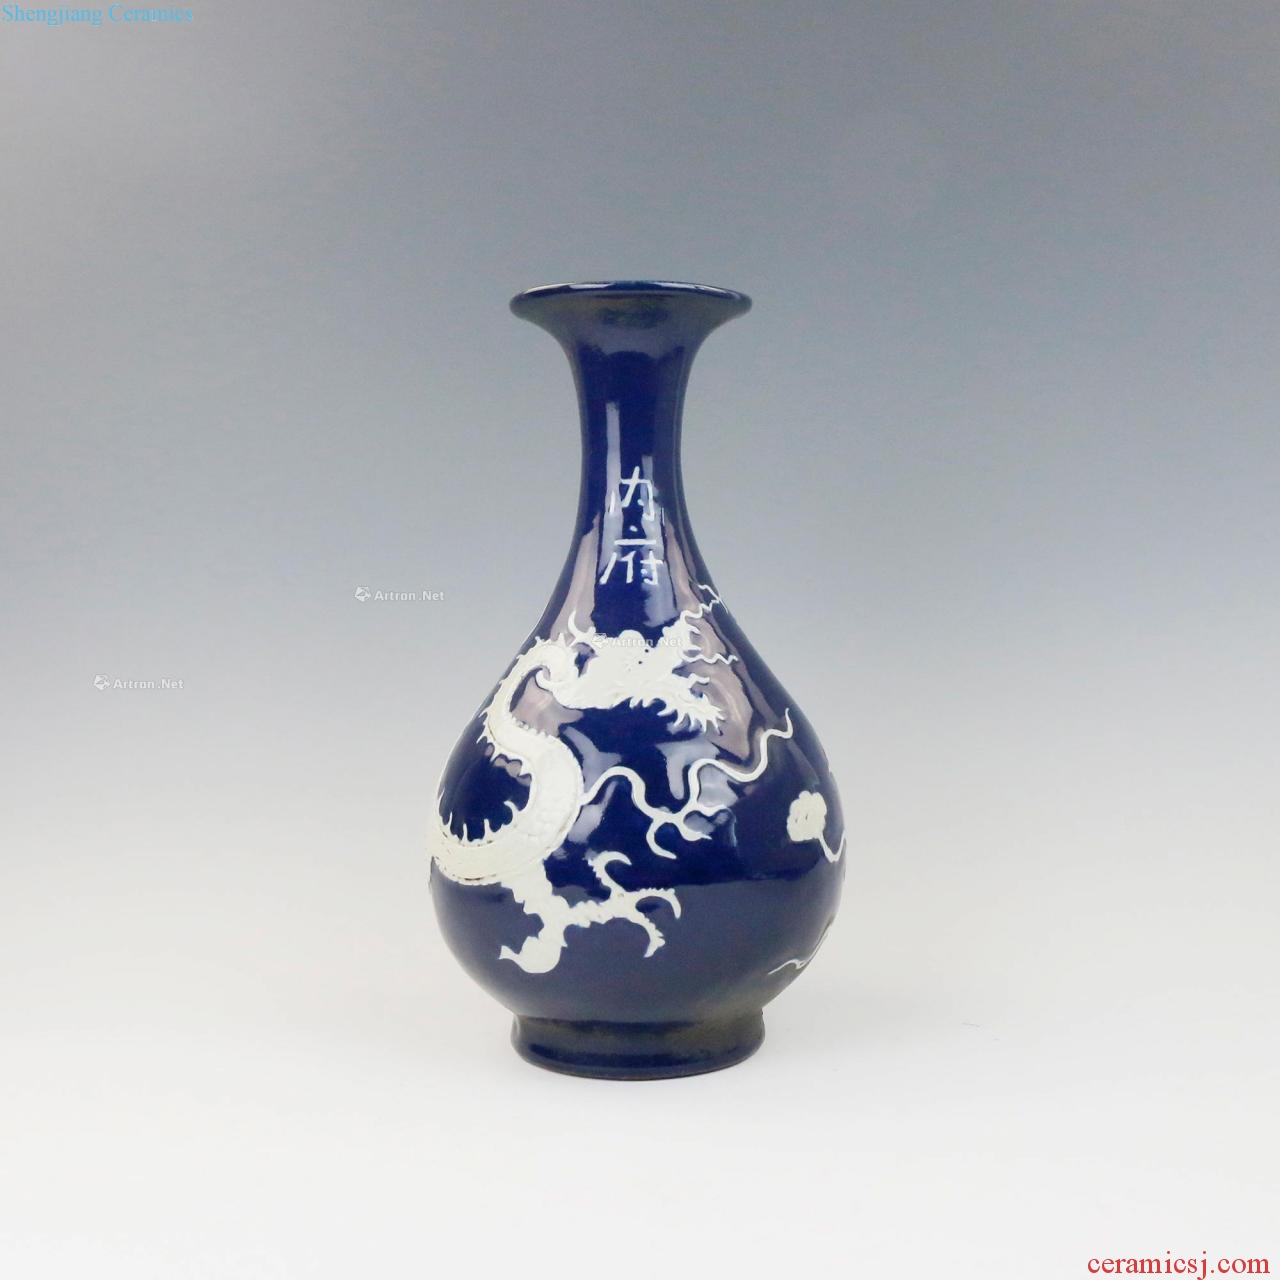 Ming ji blue glaze, a white dragon grain okho spring bottle